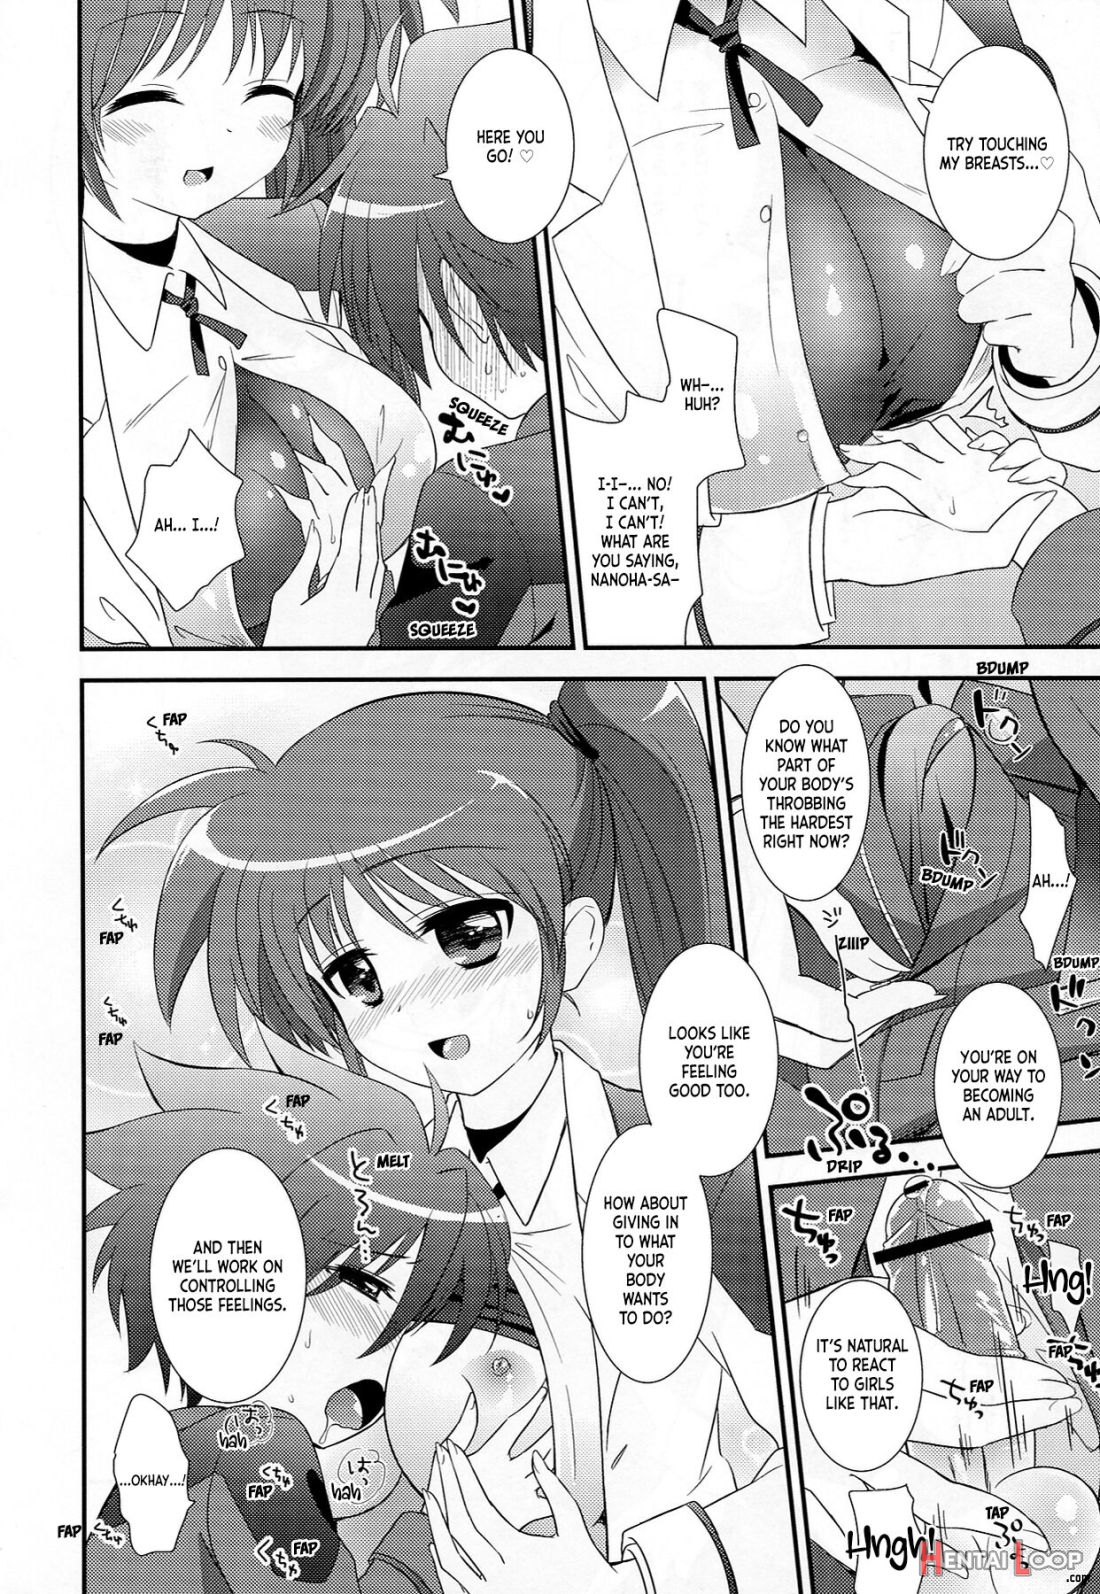 Omakase Nanoha-san page 5